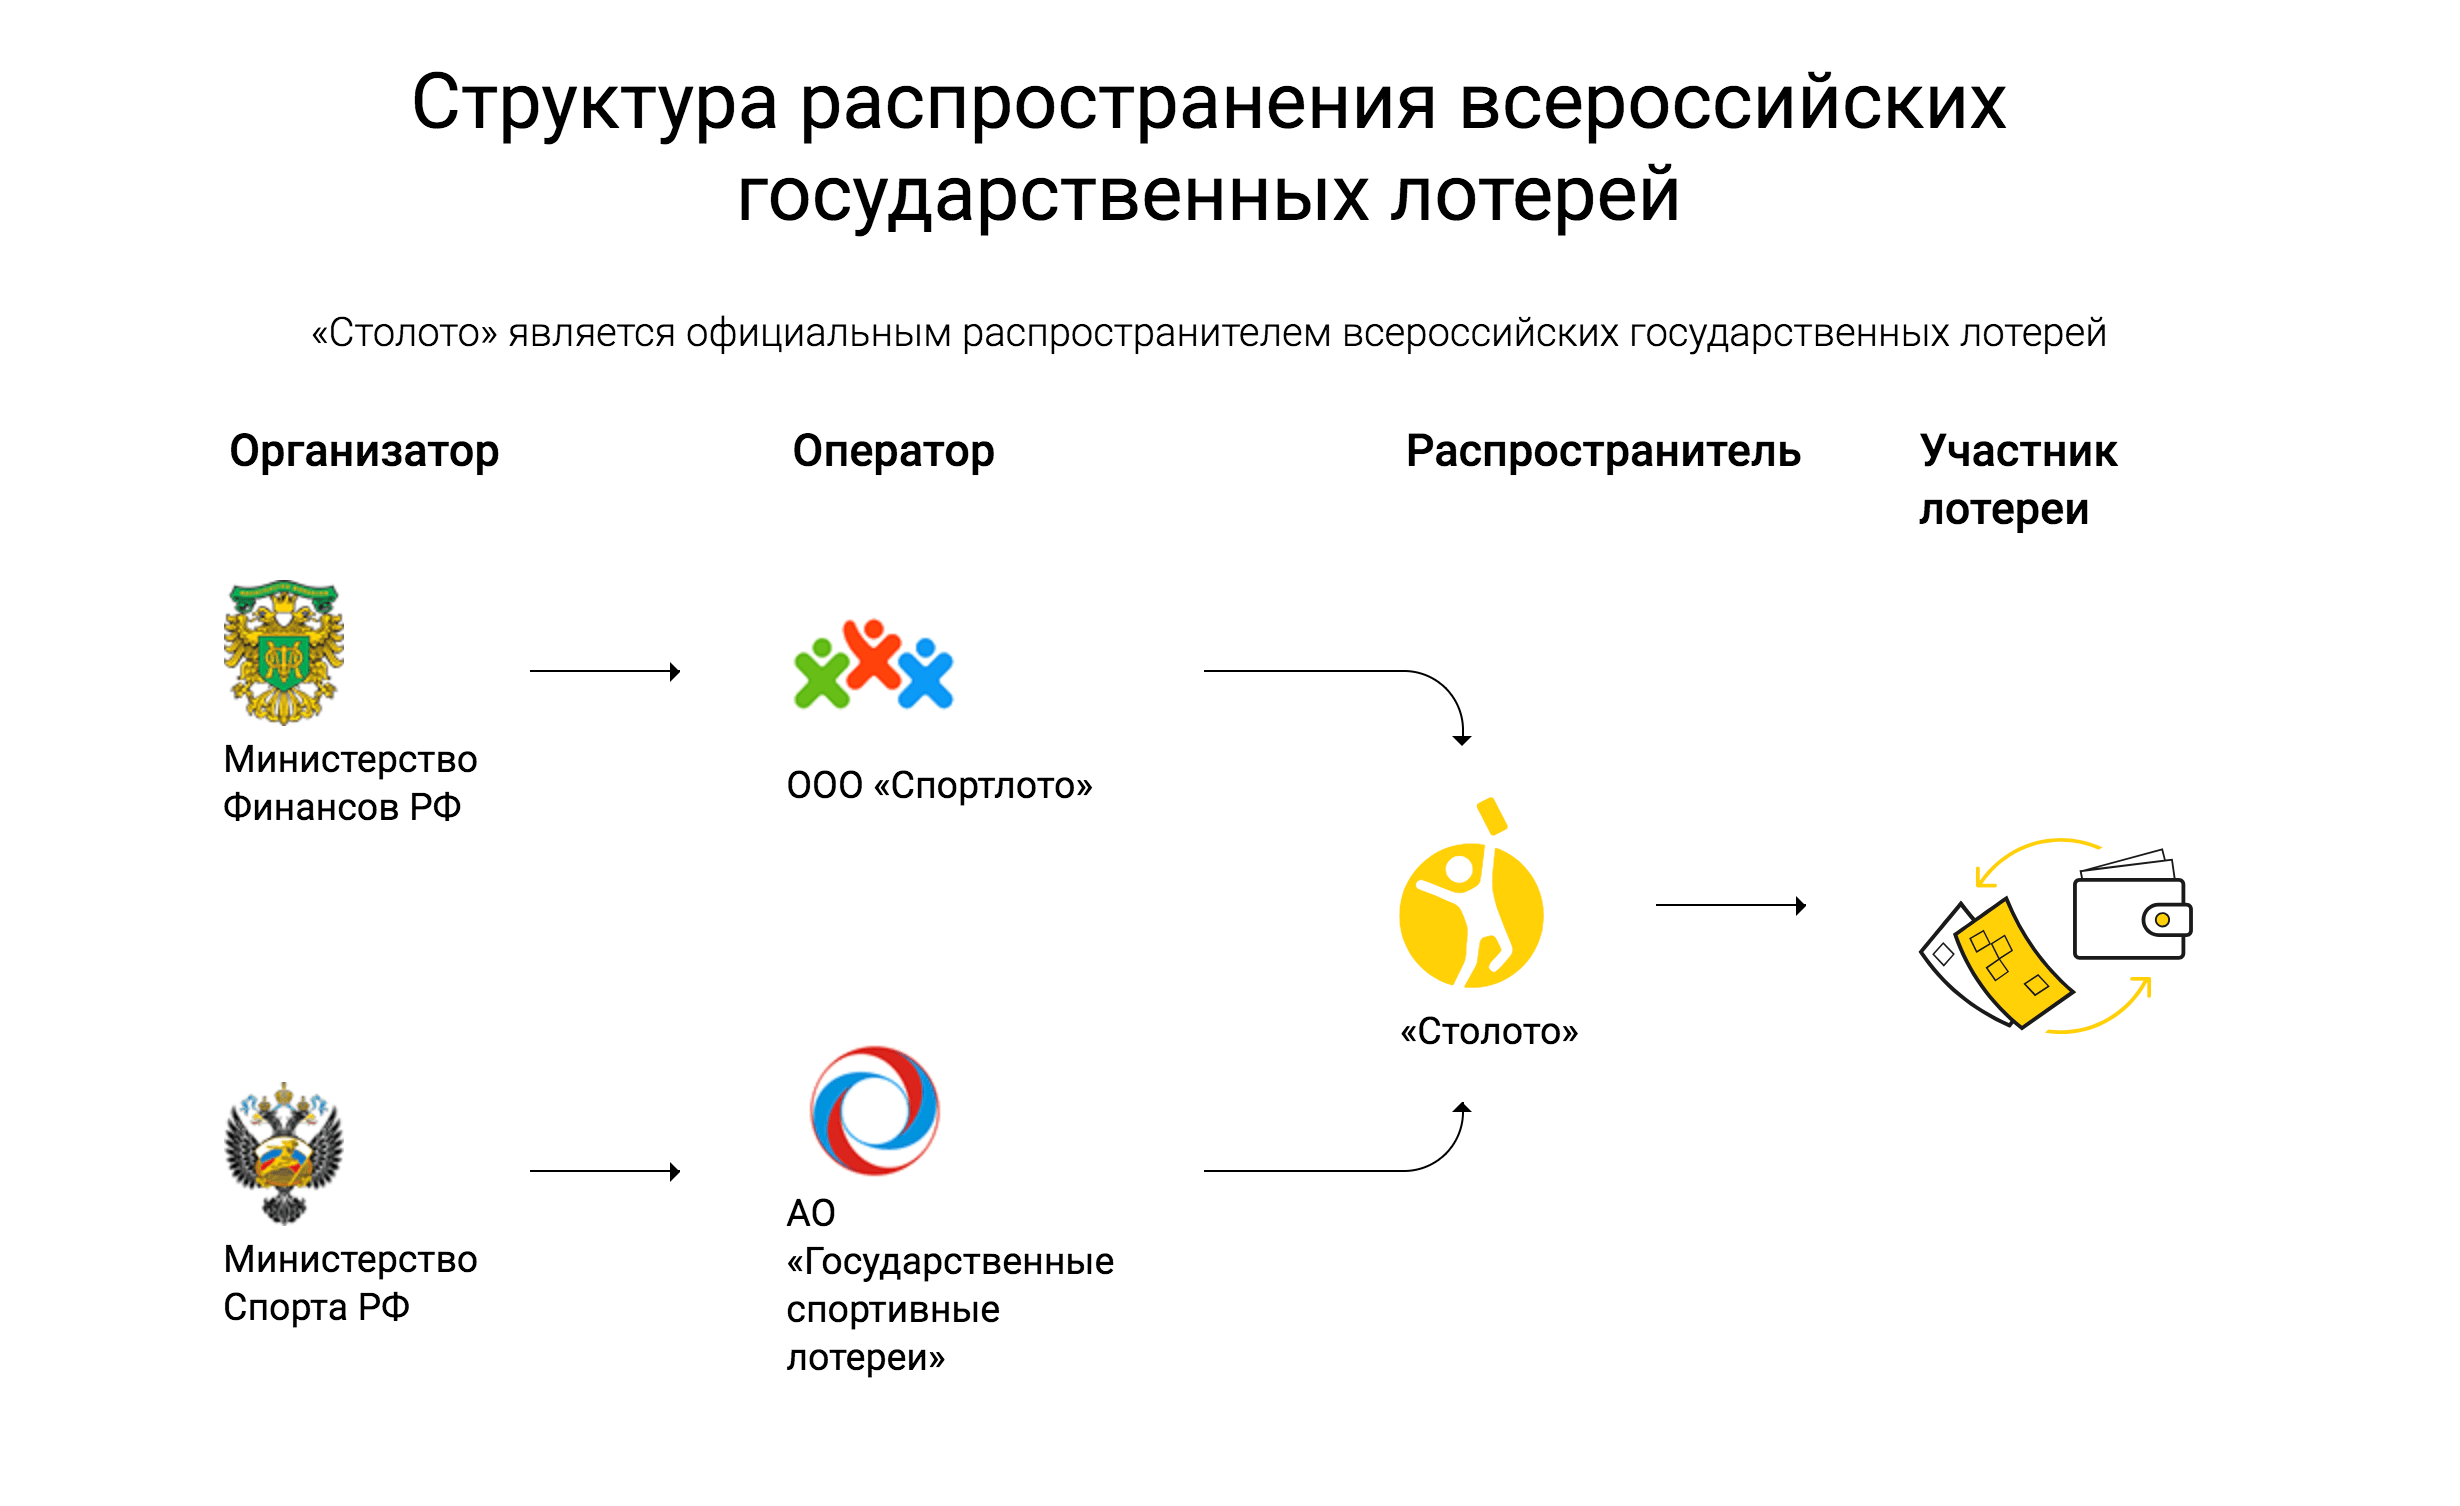 Лотерейные программы. Схема лотереи. Структура распространения лотерей. Распространители лотерей. Лотерея в России структура.